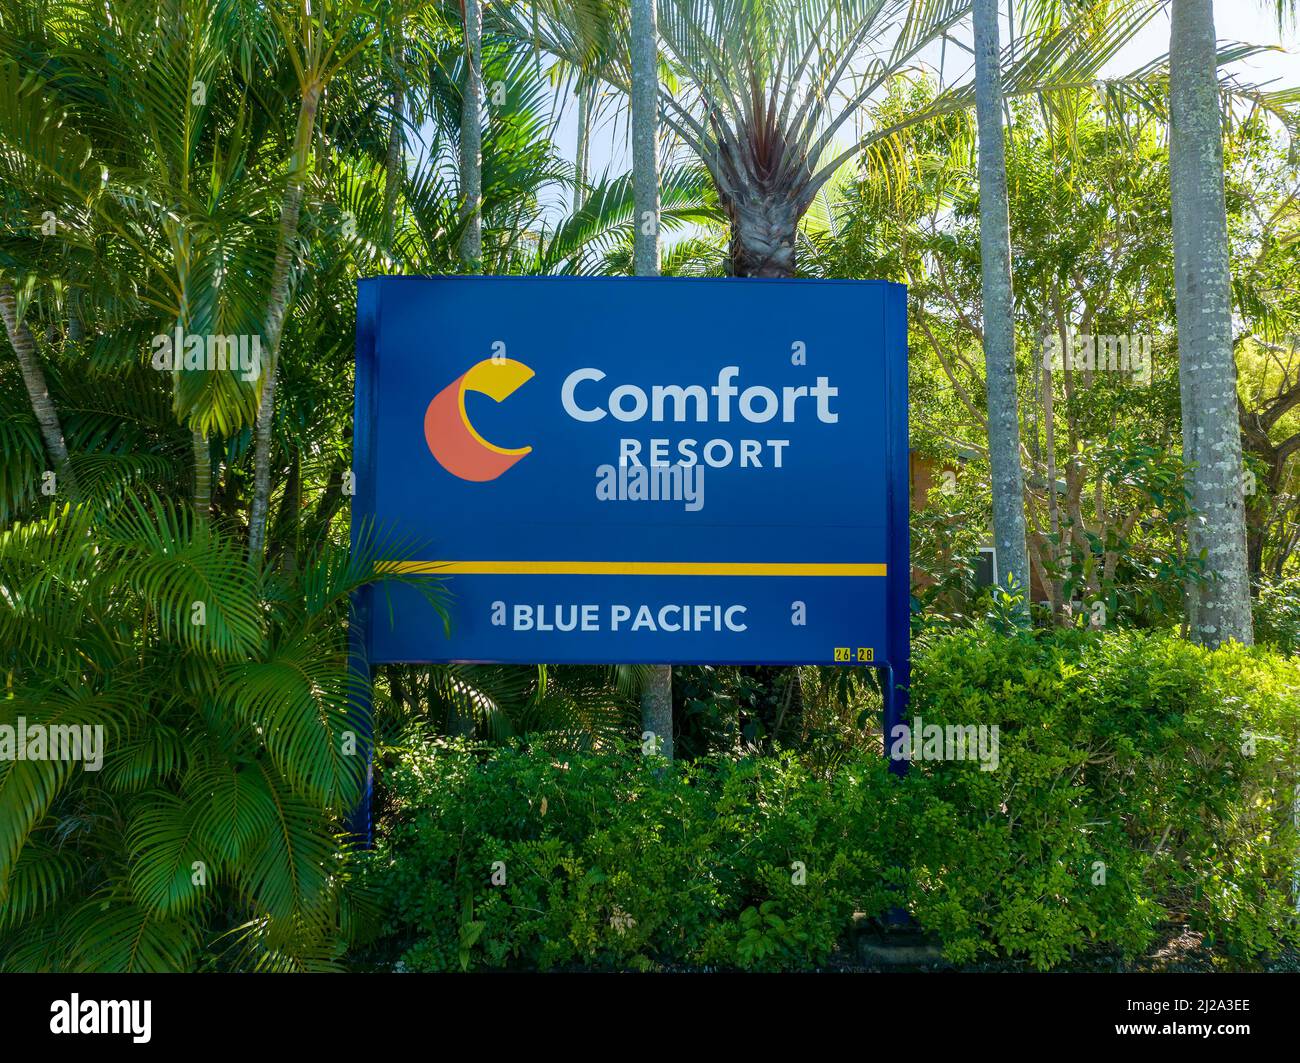 Blacks Beach, Mackay, Queensland, Australie - avril 2022 : signalisation de l'hôtel pour l'entrée dans le complexe hôtelier situé dans un parc tropical. Comfort Resort Banque D'Images